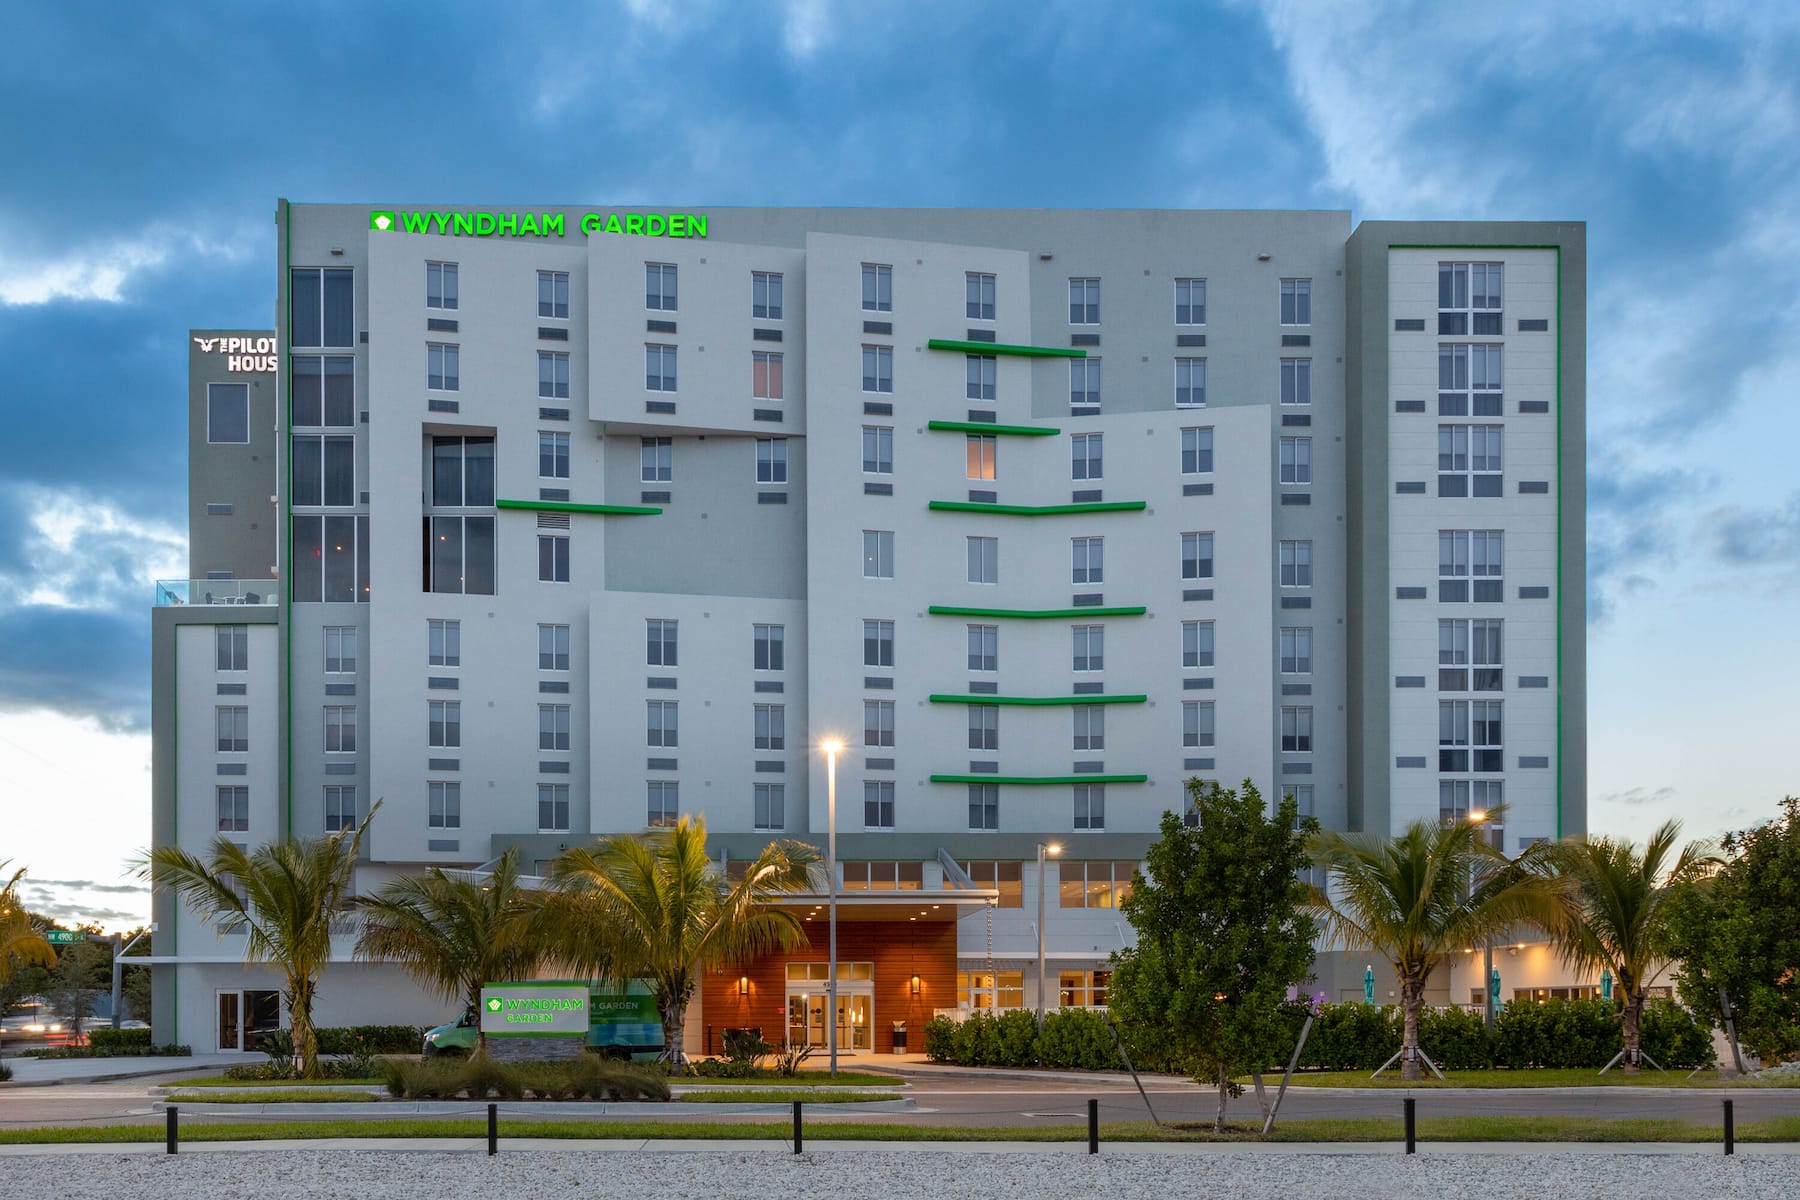 Εξωτερική εικόνα του σούρουπο του Wyndham Garden Miami International Airport Hotel στο Μαϊάμι Σπρινγκς, Φλόριντα